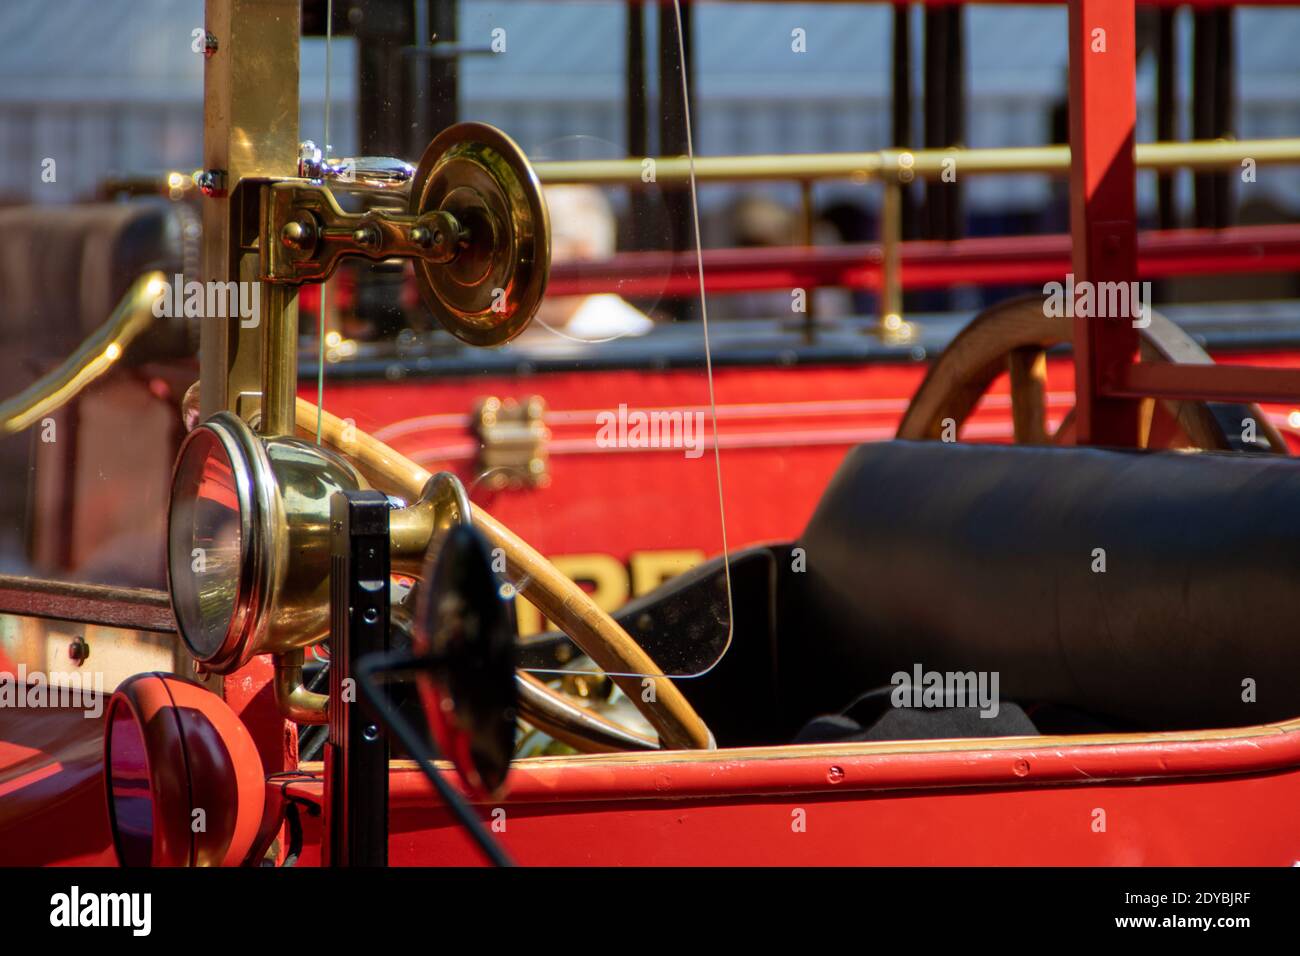 Neckargemüend, Deutschland: 16. Juli 2018: Ausstellung alter, historischer Feuerwehrfahrzeuge auf dem Marktplatz von Neckargemünd, einer süddeutschen Kleinstadt Stockfoto